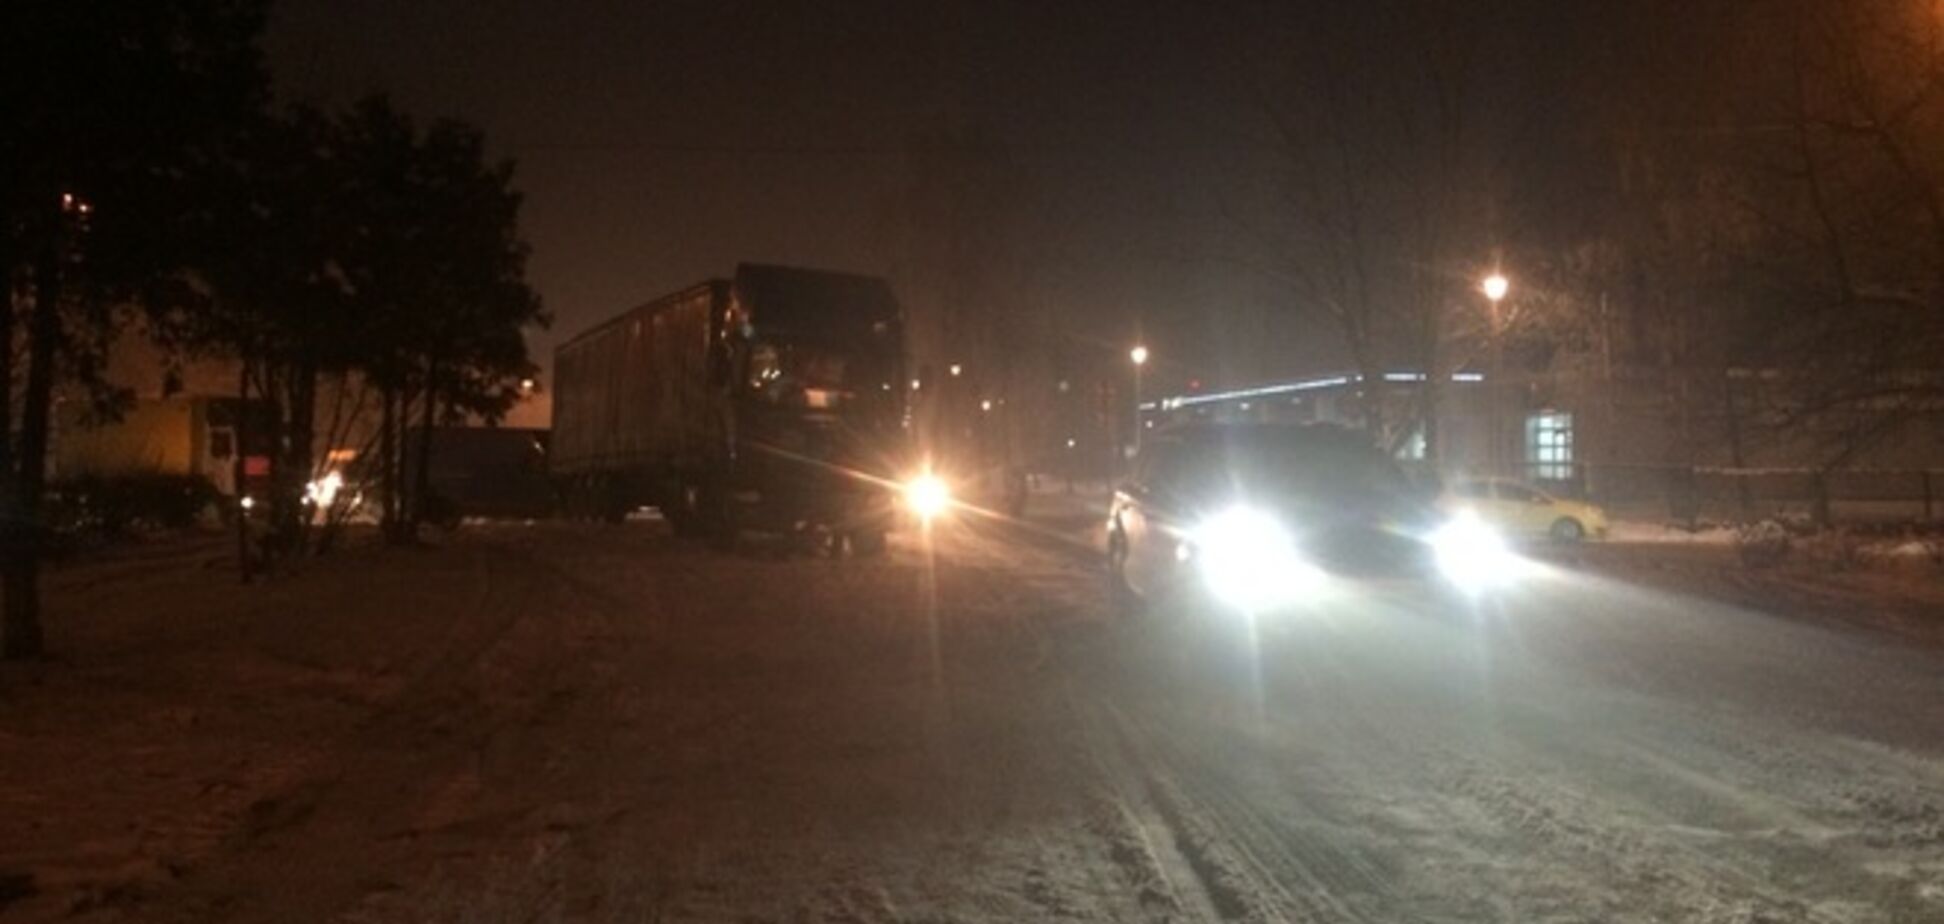 У Києві вантажівка перекрила всю дорогу: опубліковано фото